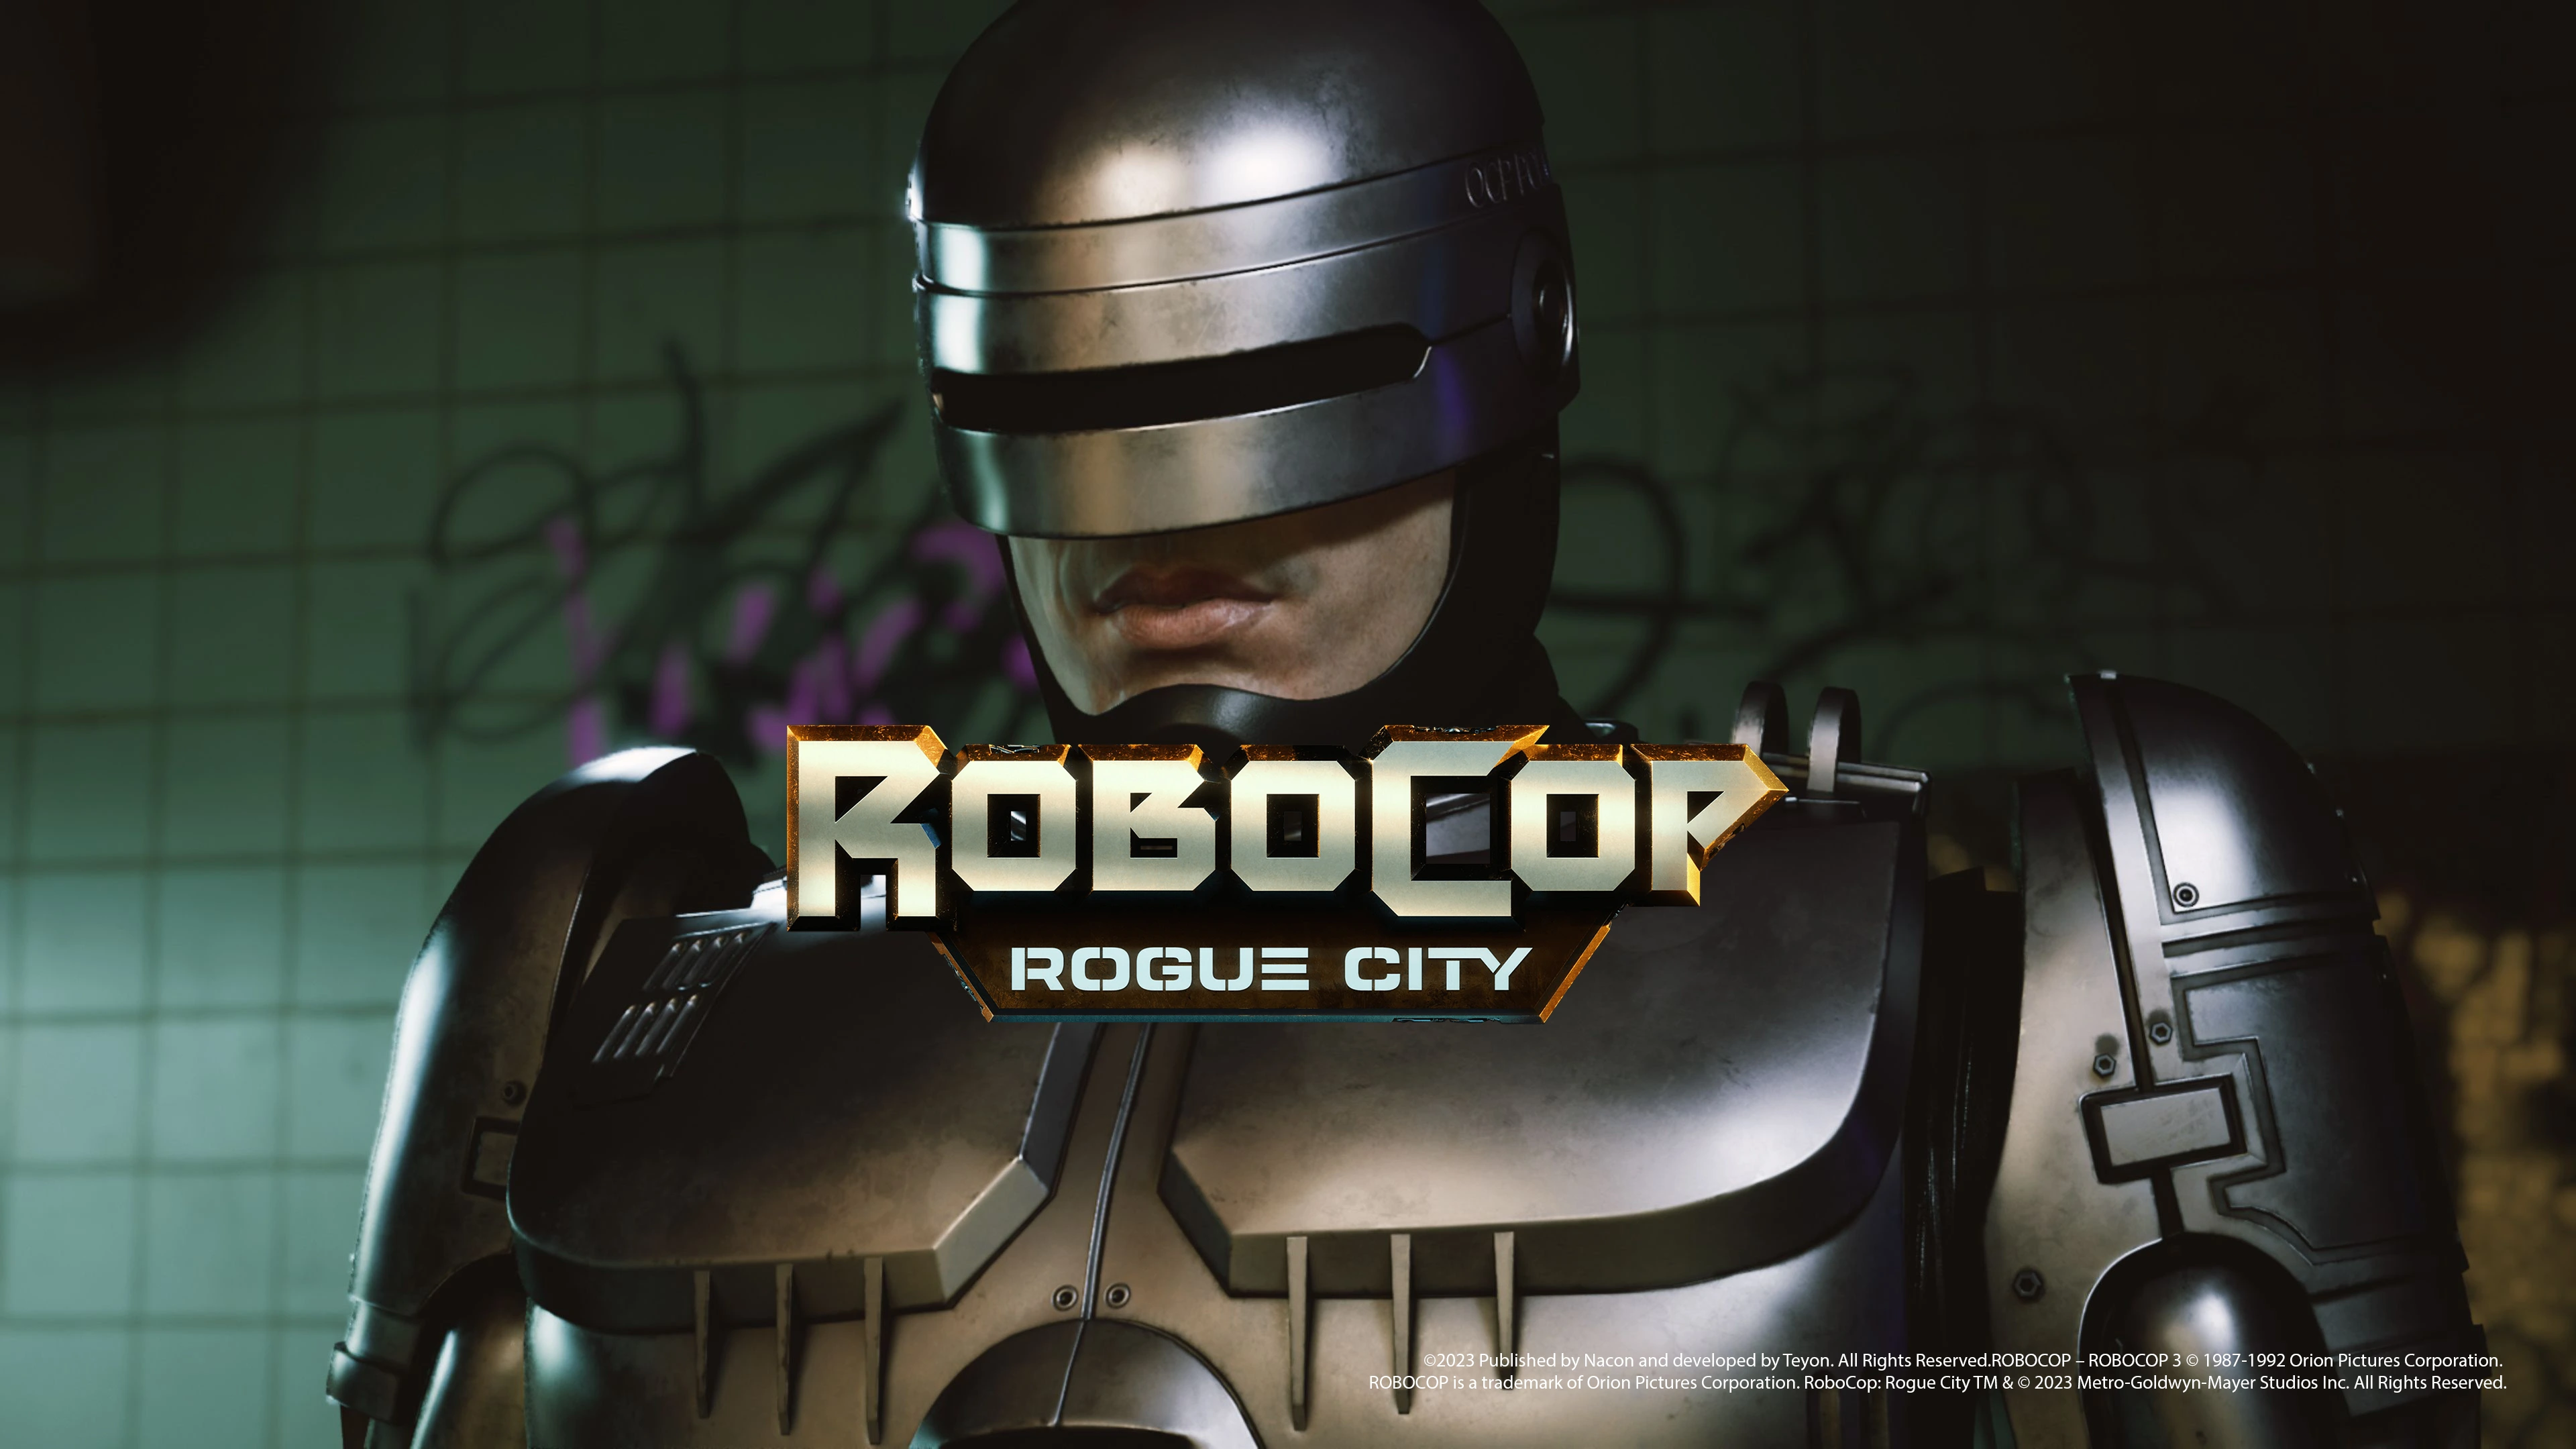 Robocop: Rogue city - fedezd fel a játék eredeti történetét